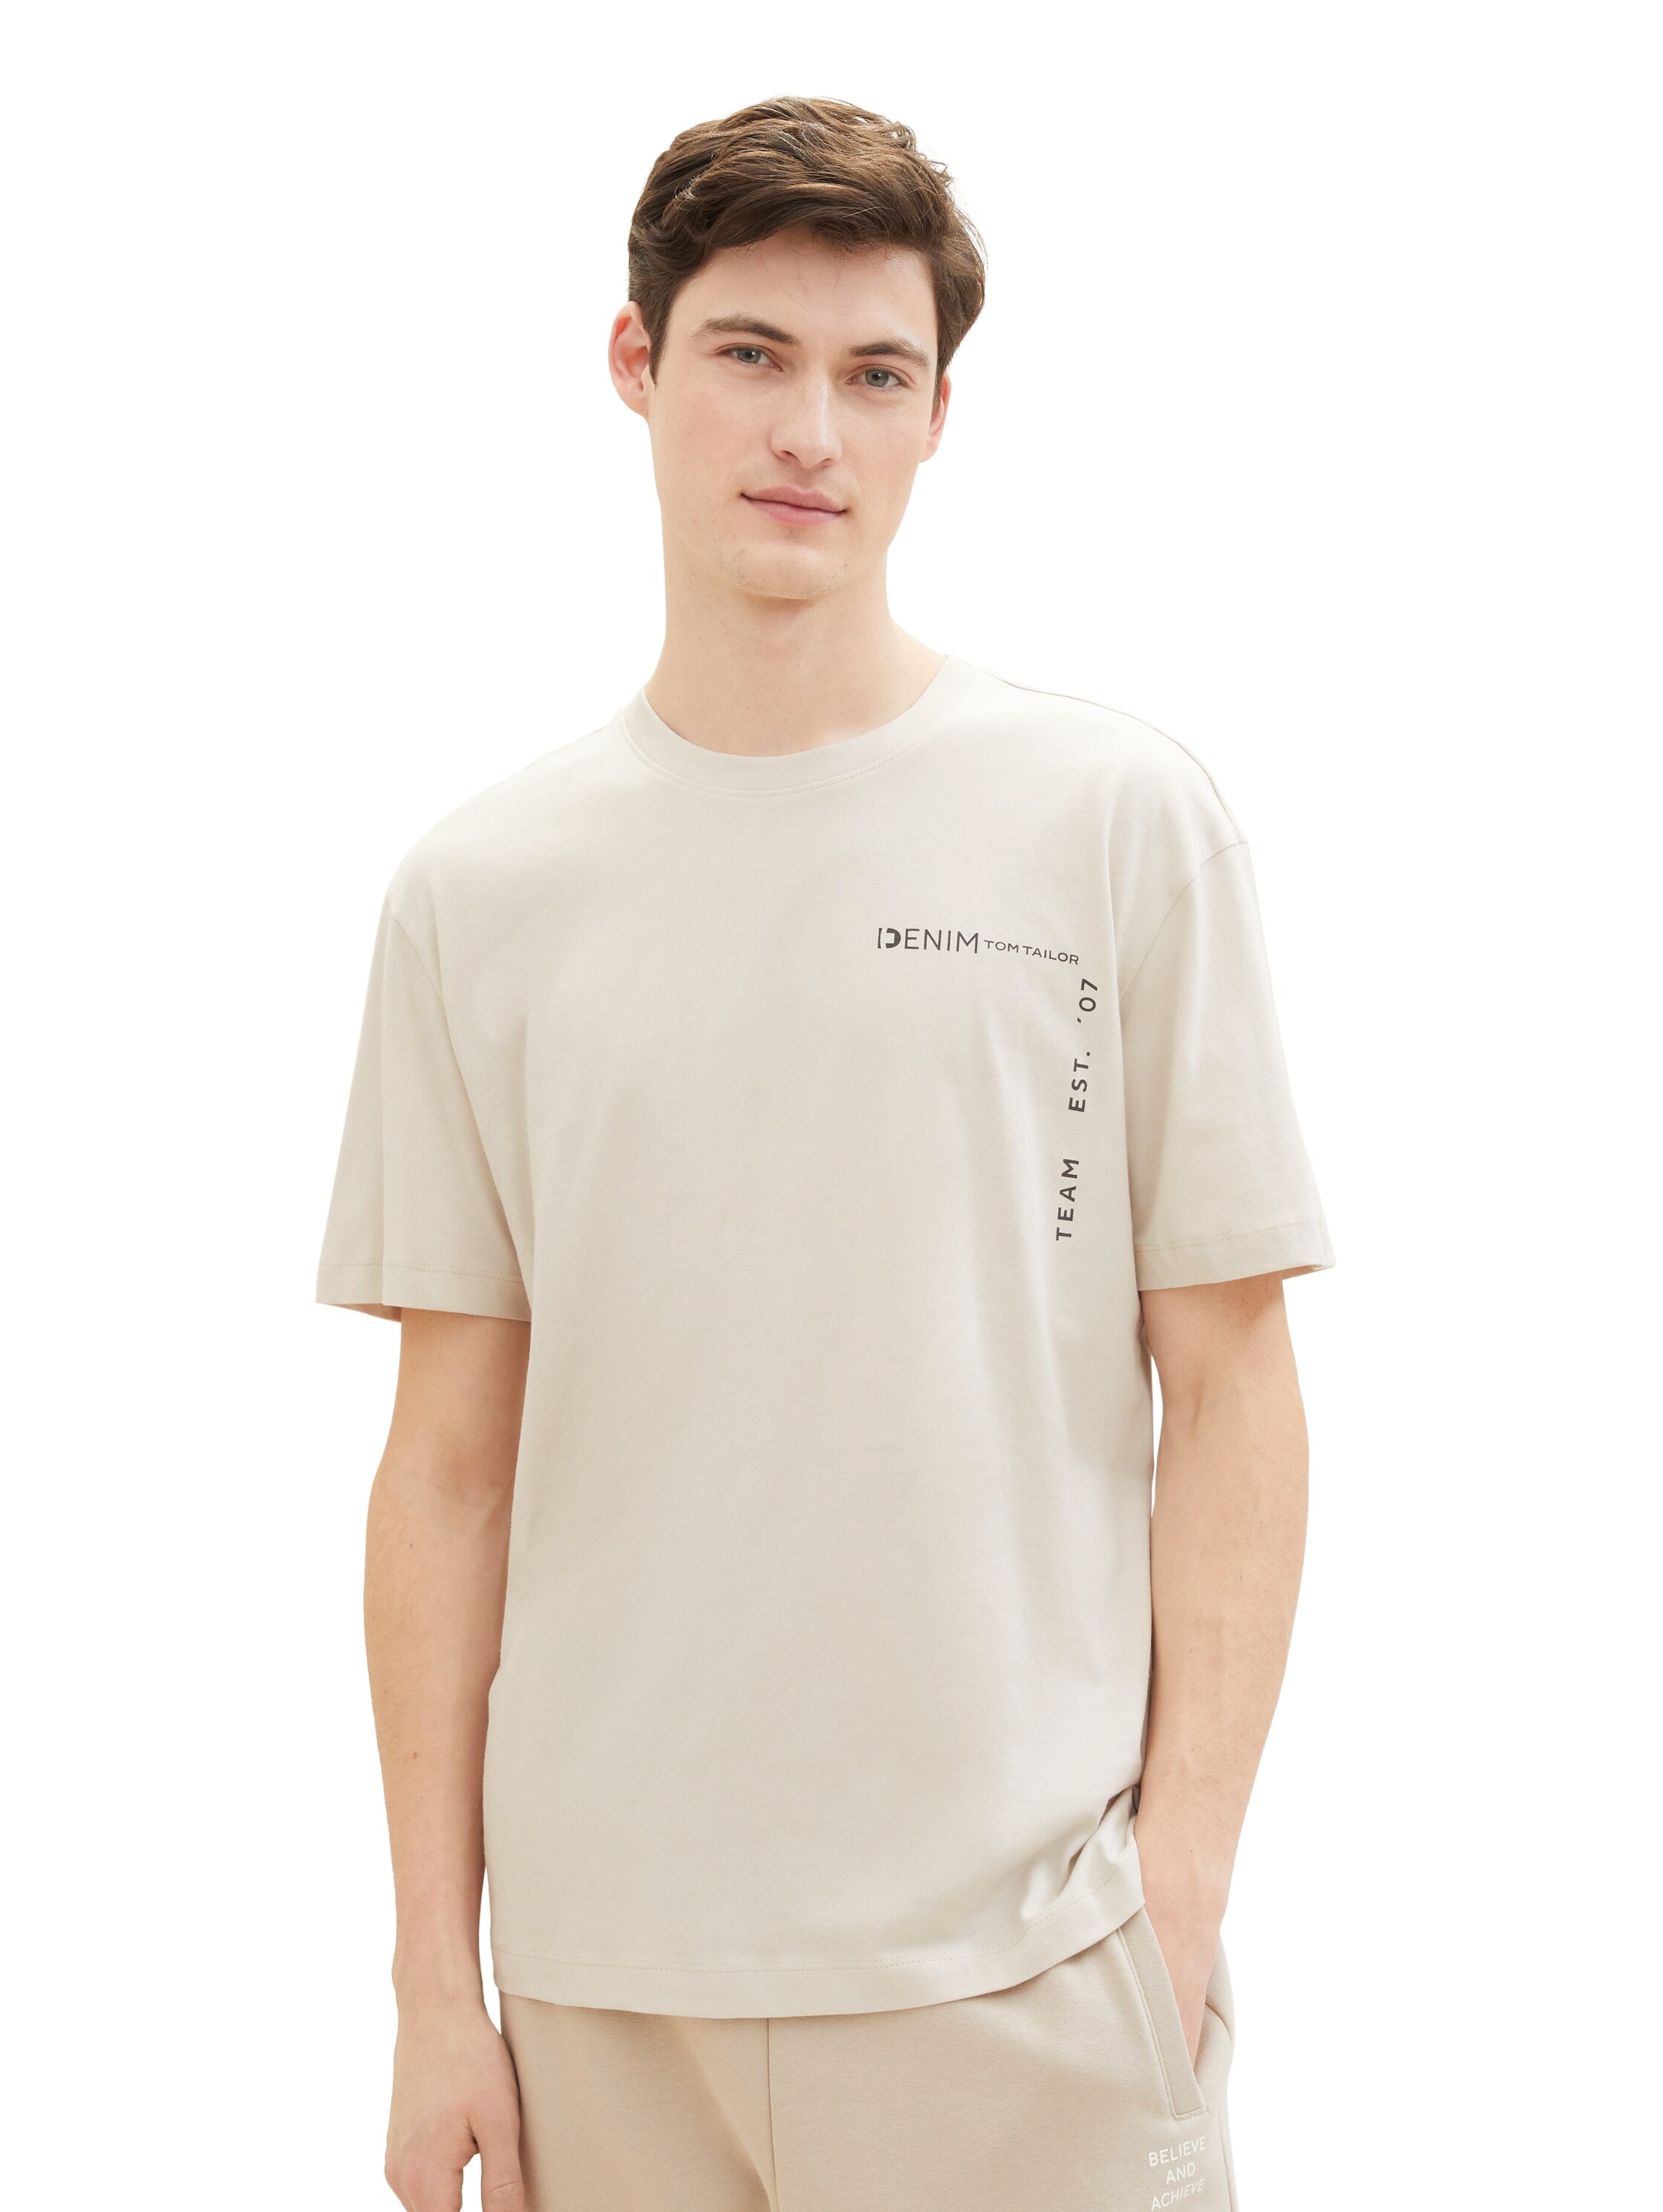 TOM TAILOR Denim T-Shirt, mit grossen Print auf dem Rücken